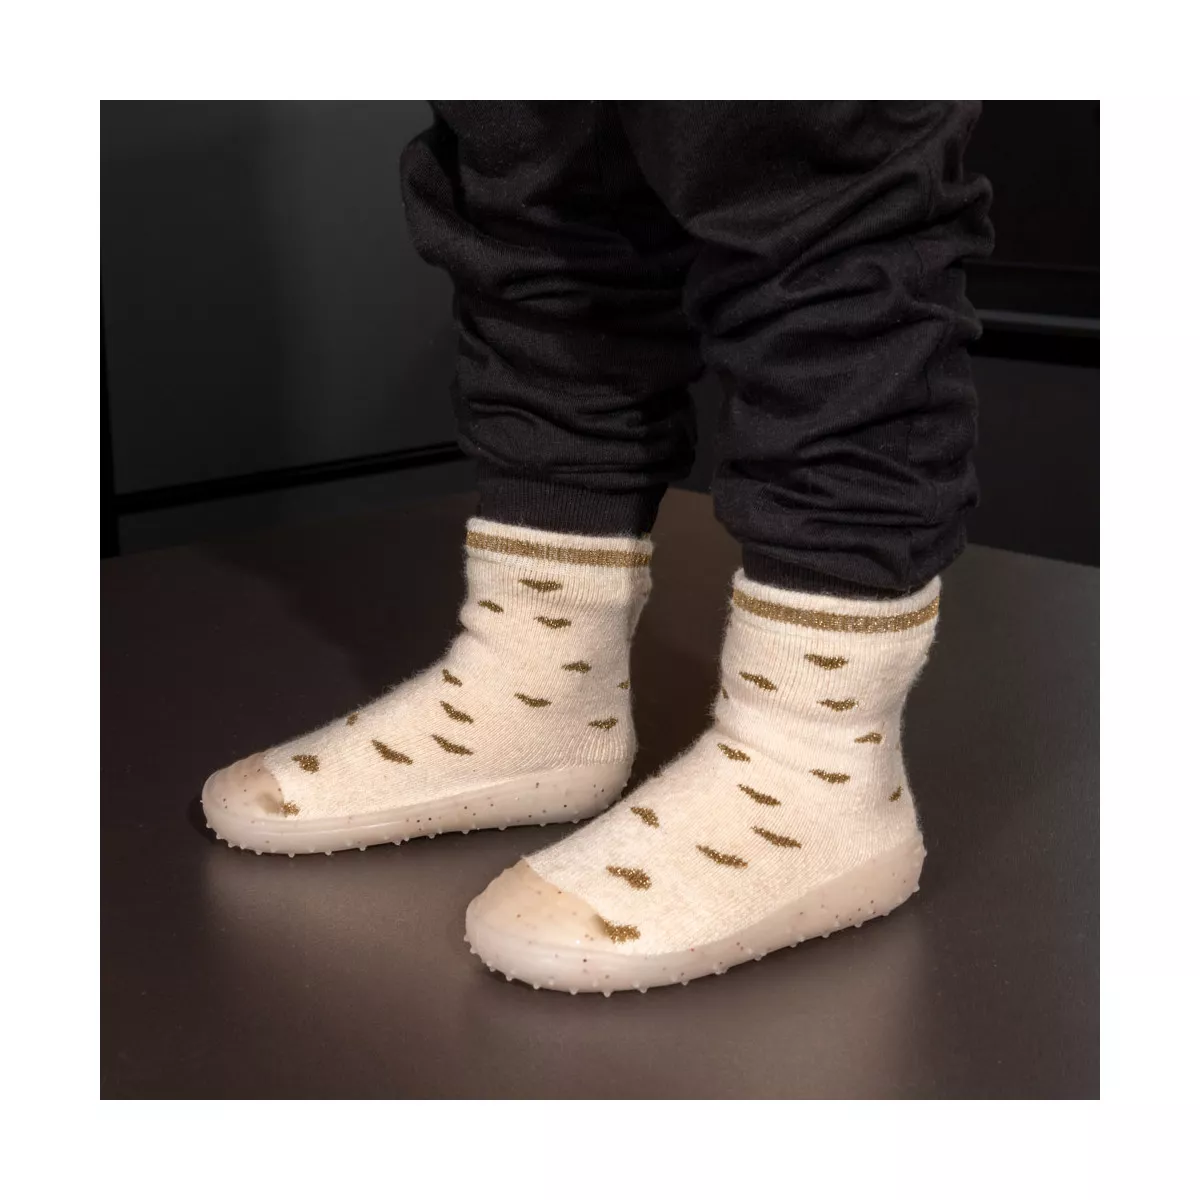 Chausson-chaussette garçon : achat en ligne - Chaussons